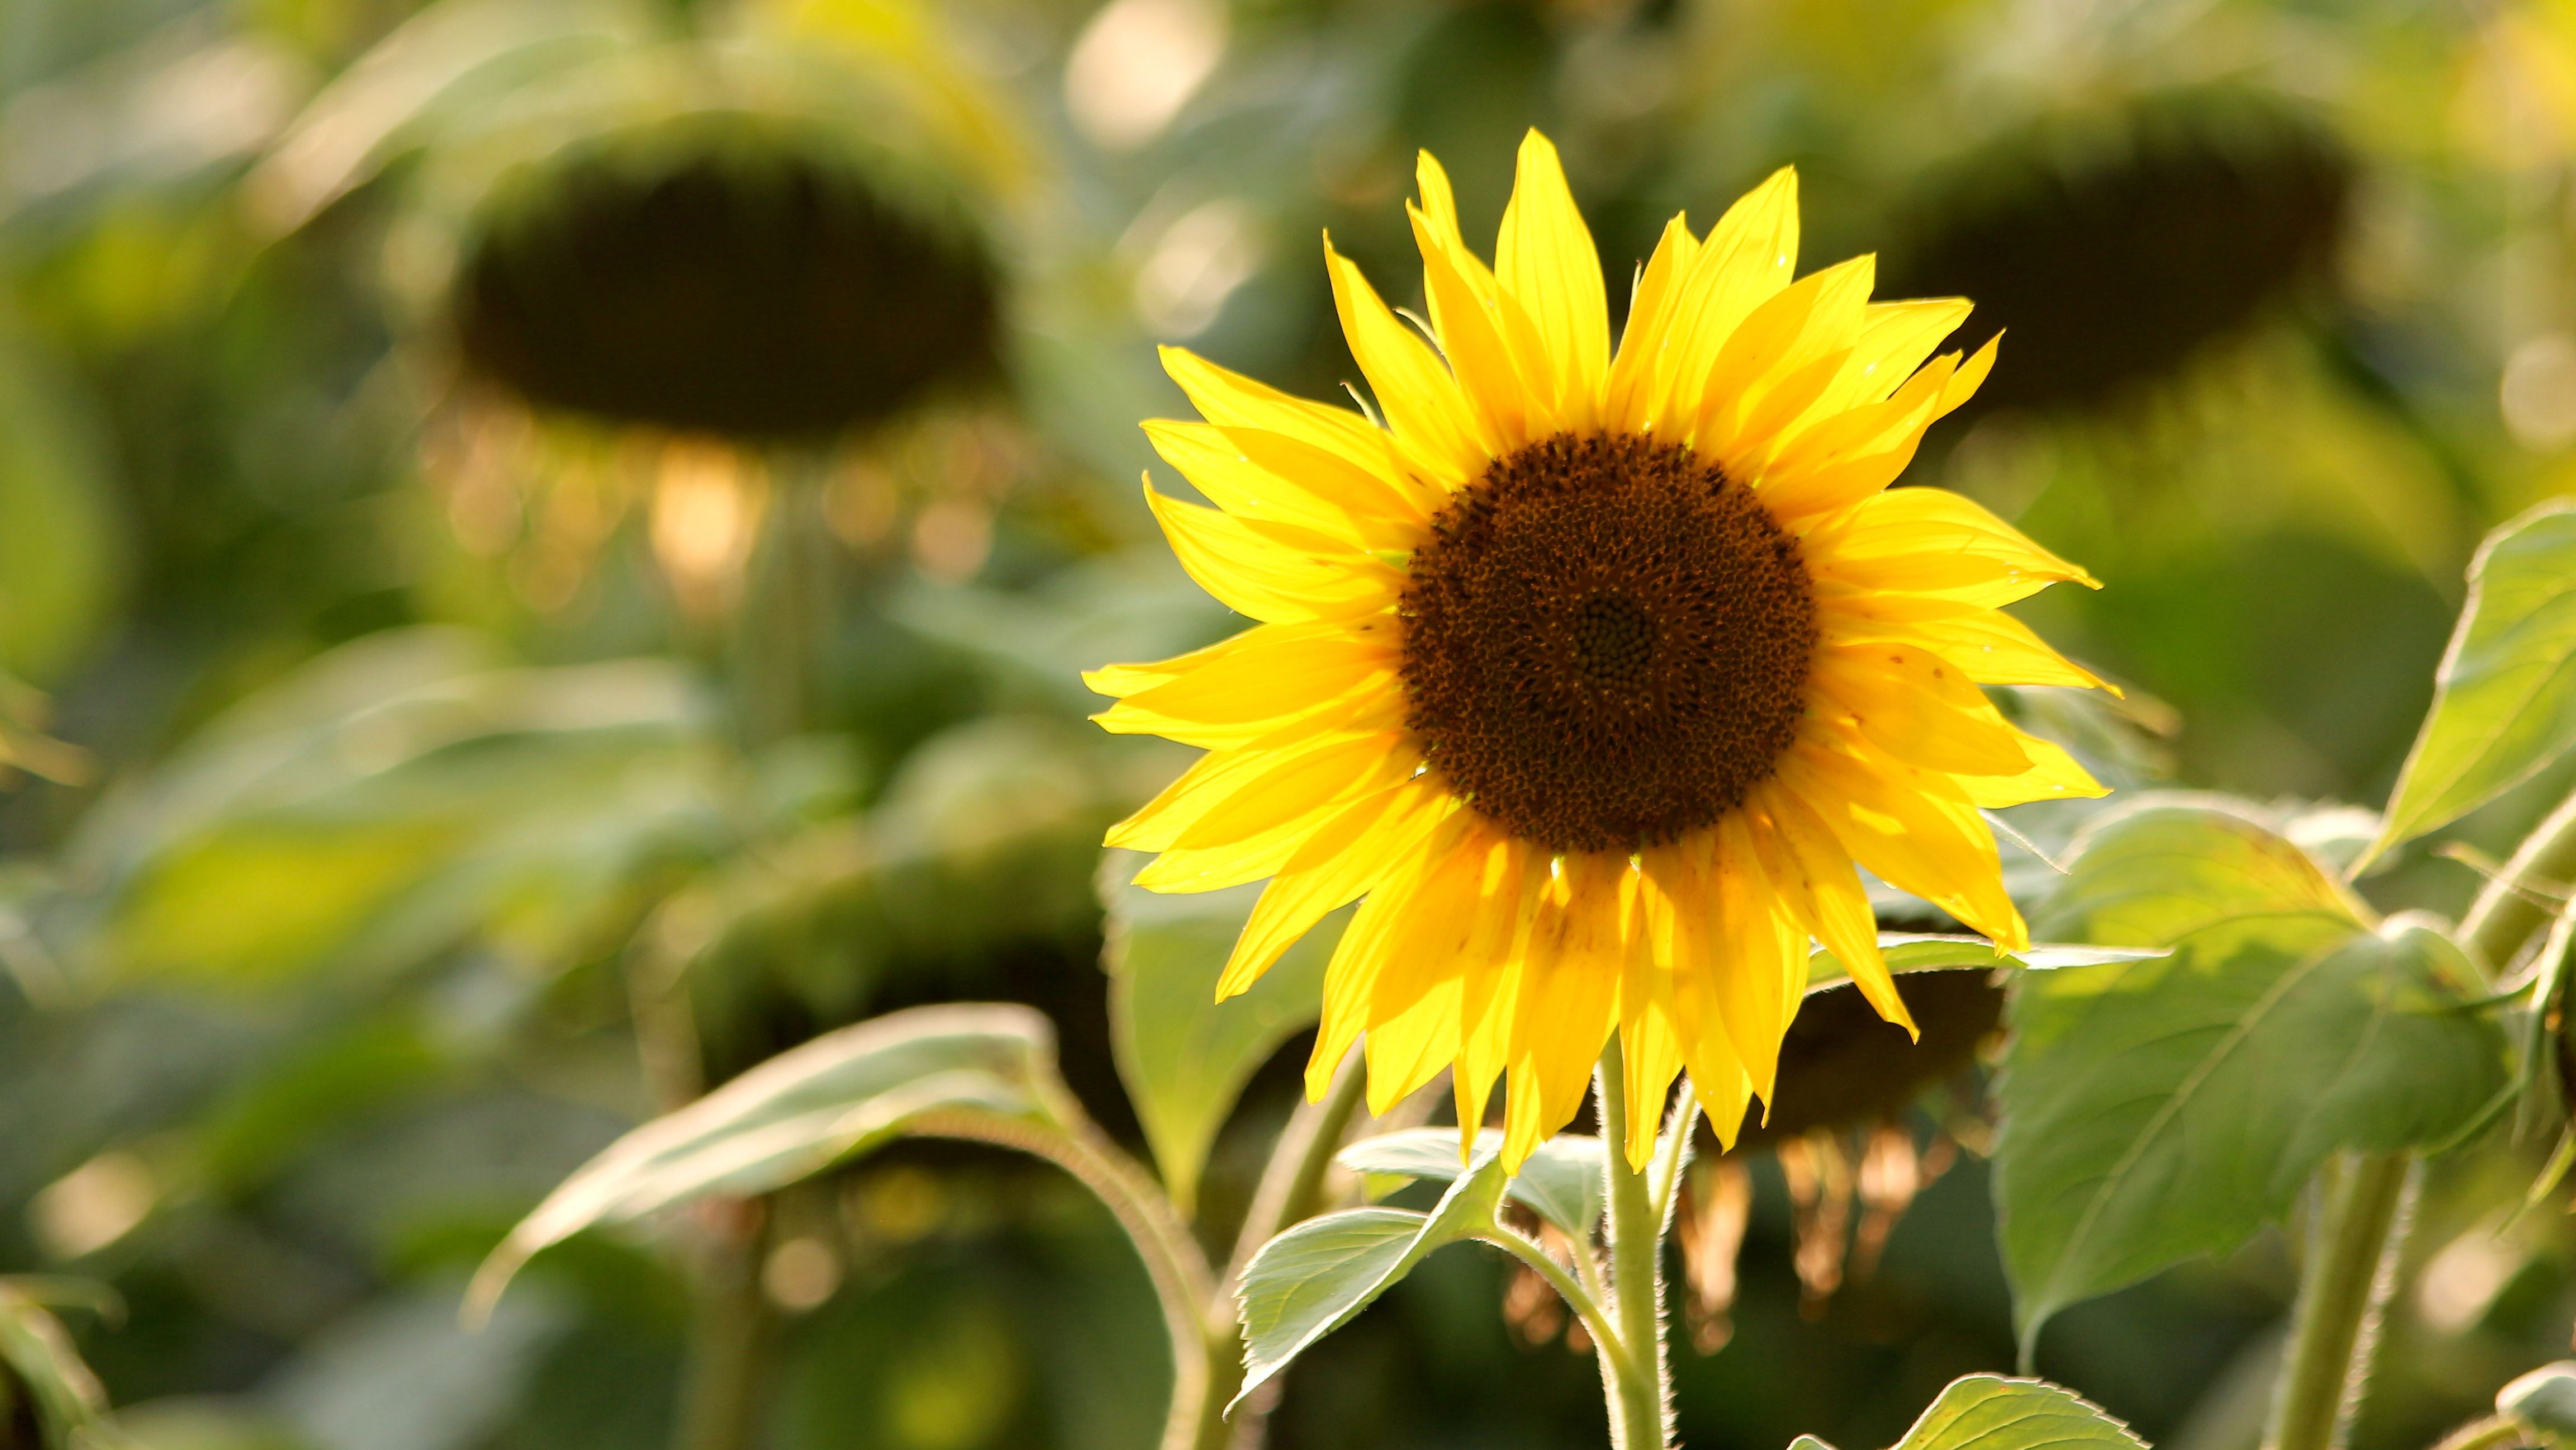 a photograph of a sunflower. 